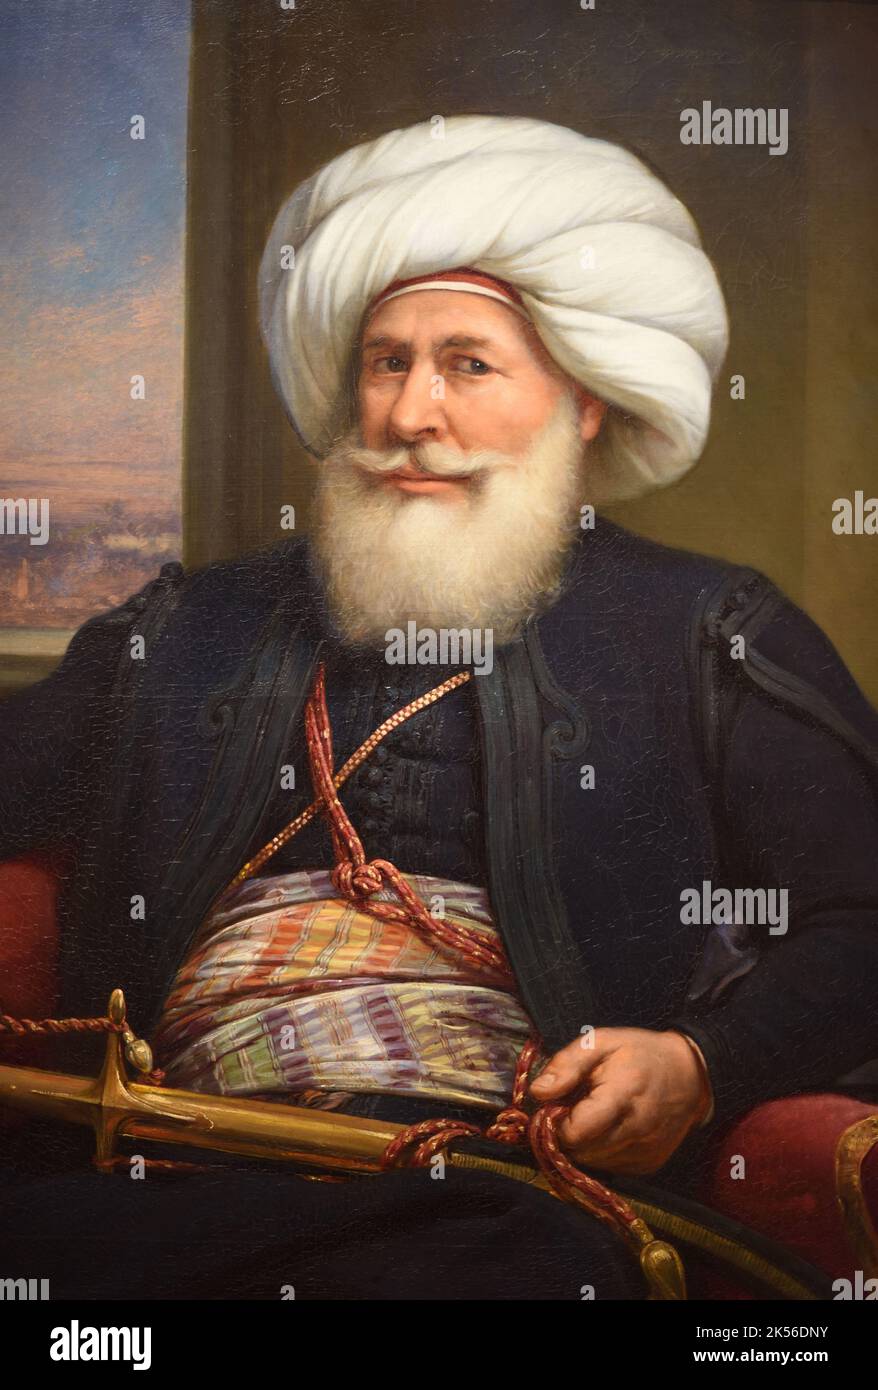 Muhammed Ali Pasha, alias Muhammed Ali d'Egitto e il Sudan o Mehmet Ali Pasha (1769-1849) è stato un governatore ottomano albanese e de facto governatore dell'Egitto tra il 1805 e il 1848. Dipinto ad olio (1841) di Louis Charles Auguste Couder (dettaglio) Foto Stock